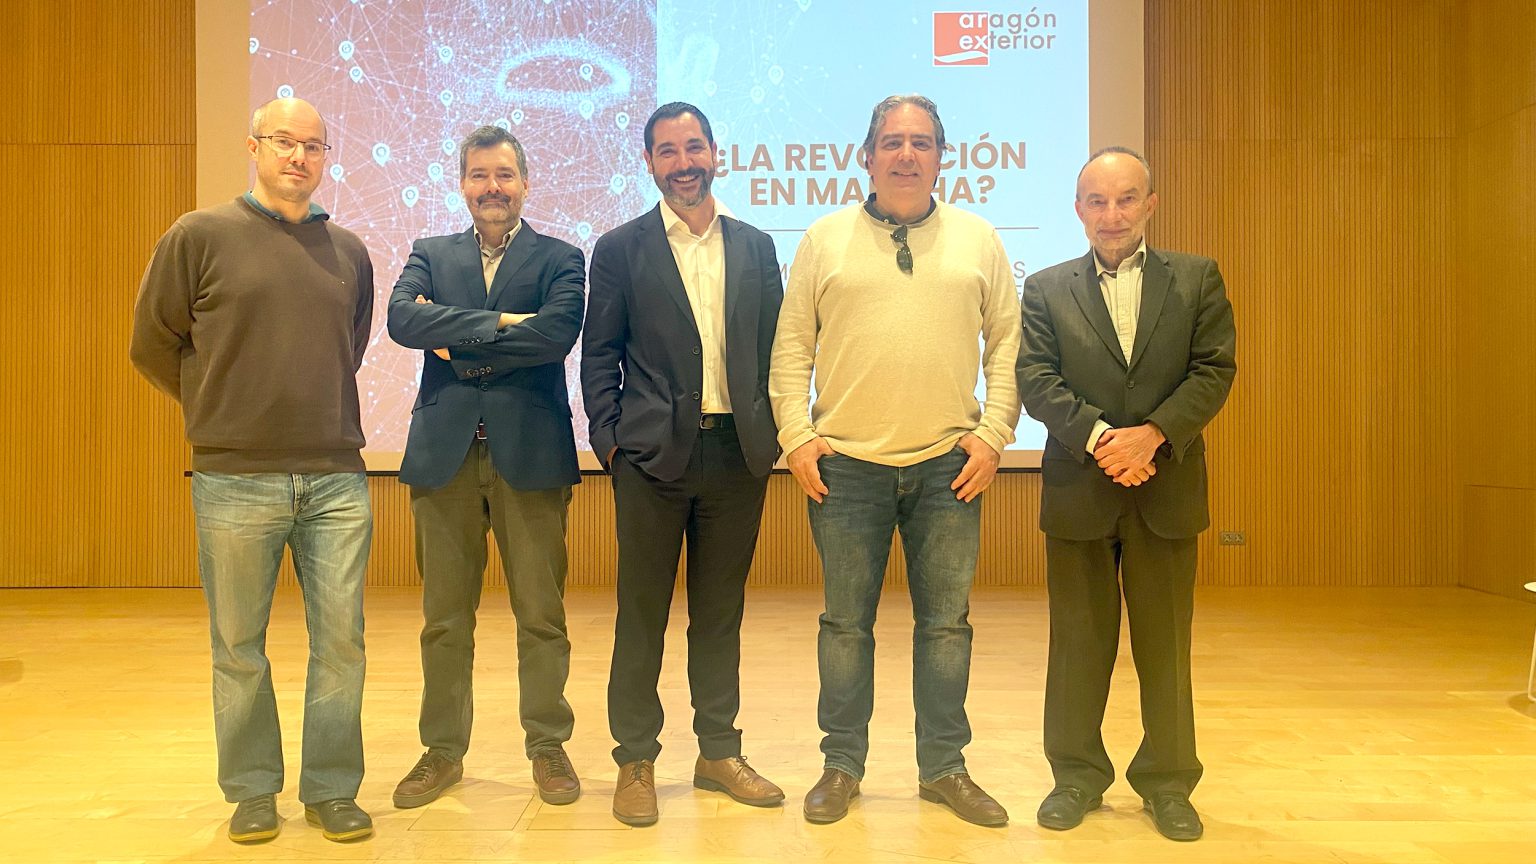 The Mindkind, empresa CEEIARAGON, ha participado en una jornada organizada por Aragón Exterior sobre Inteligencia Artificial